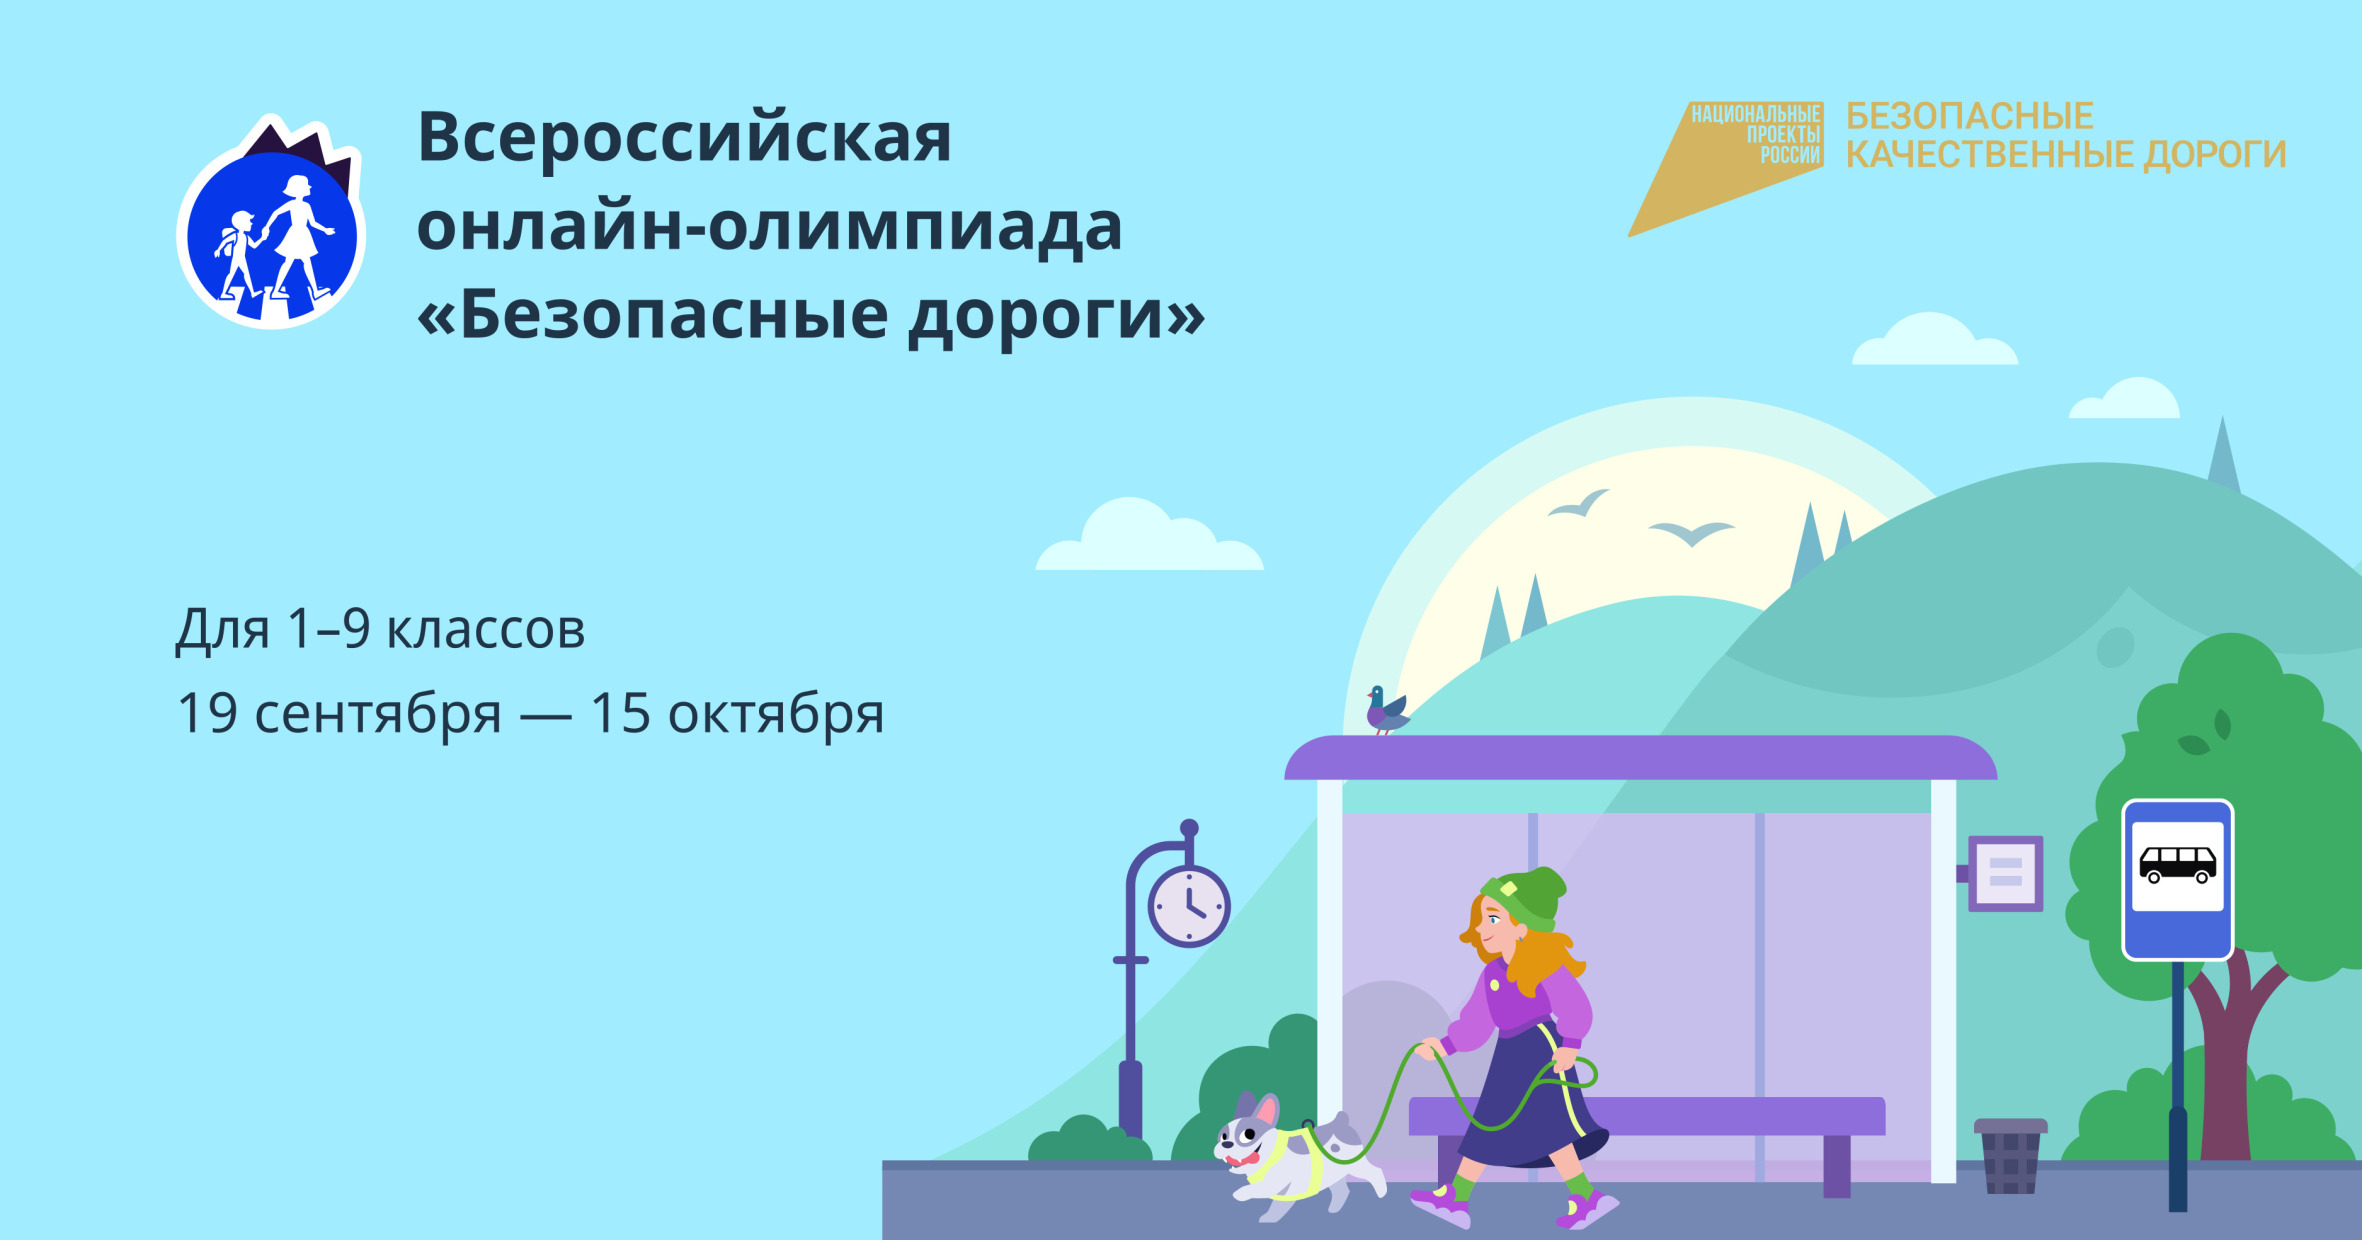 Школьников Татарстана приглашают к участию во Всероссийской онлайн-олимпиаде «Безопасные дороги»